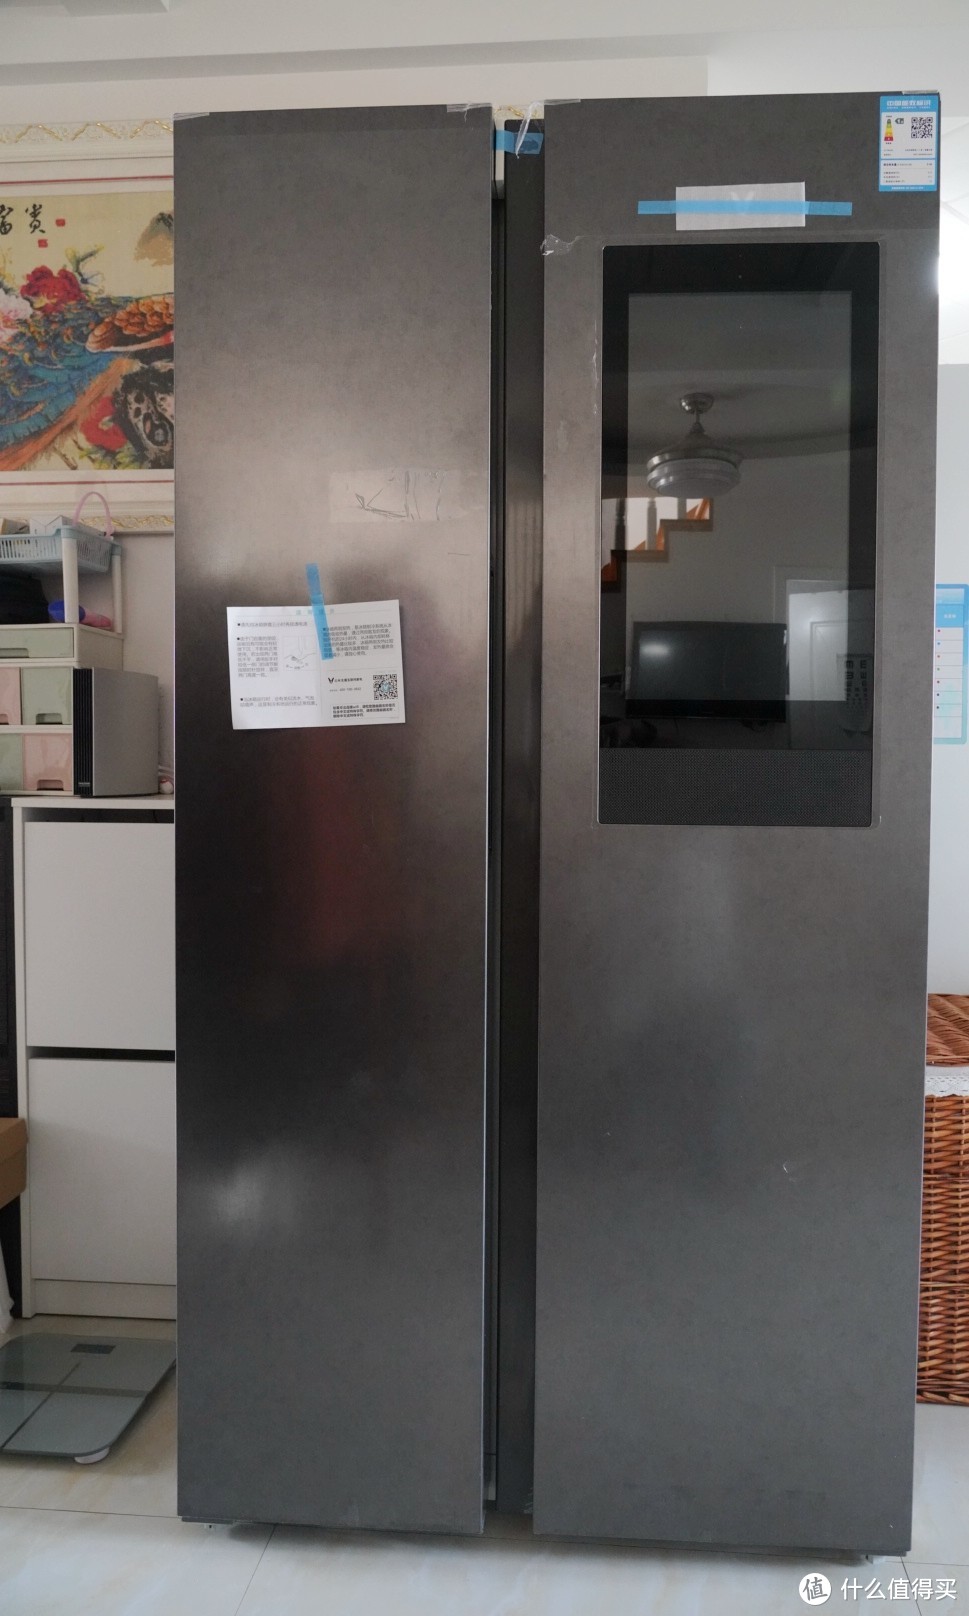 640L超大容量的智能AI冰箱-云米 21Face 2S对开门冰箱